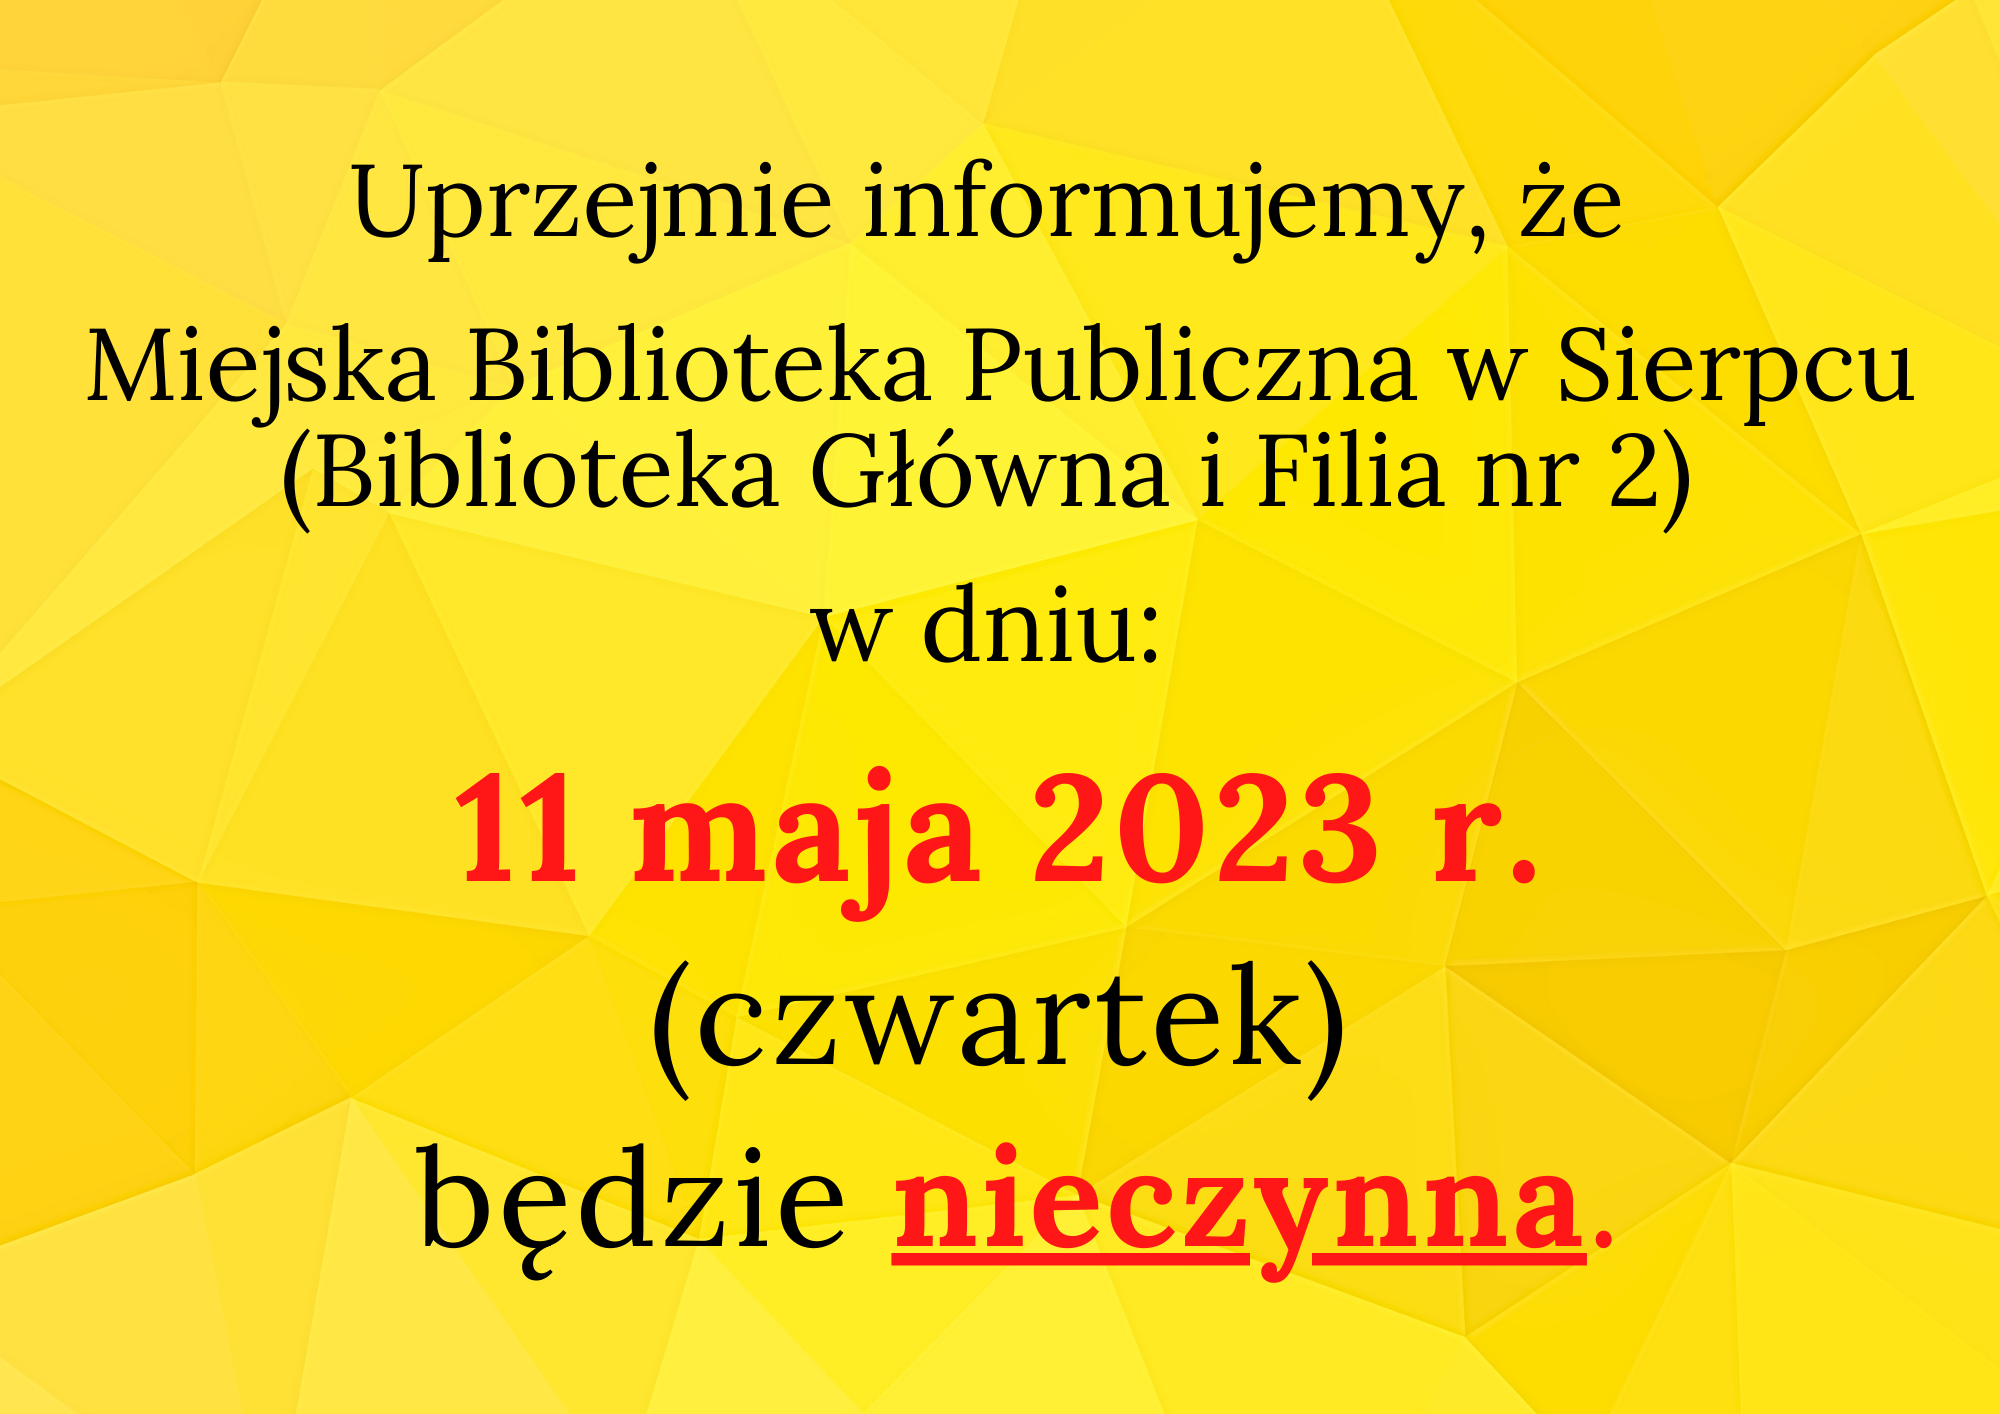 Uprzejmie informujemy, że Miejska Biblioteka Publiczna w Sierpcu (Biblioteka Główna i Filia nr 2) w dniu: 11 maja 2023 r. (czwartek) będzie nieczynna. 